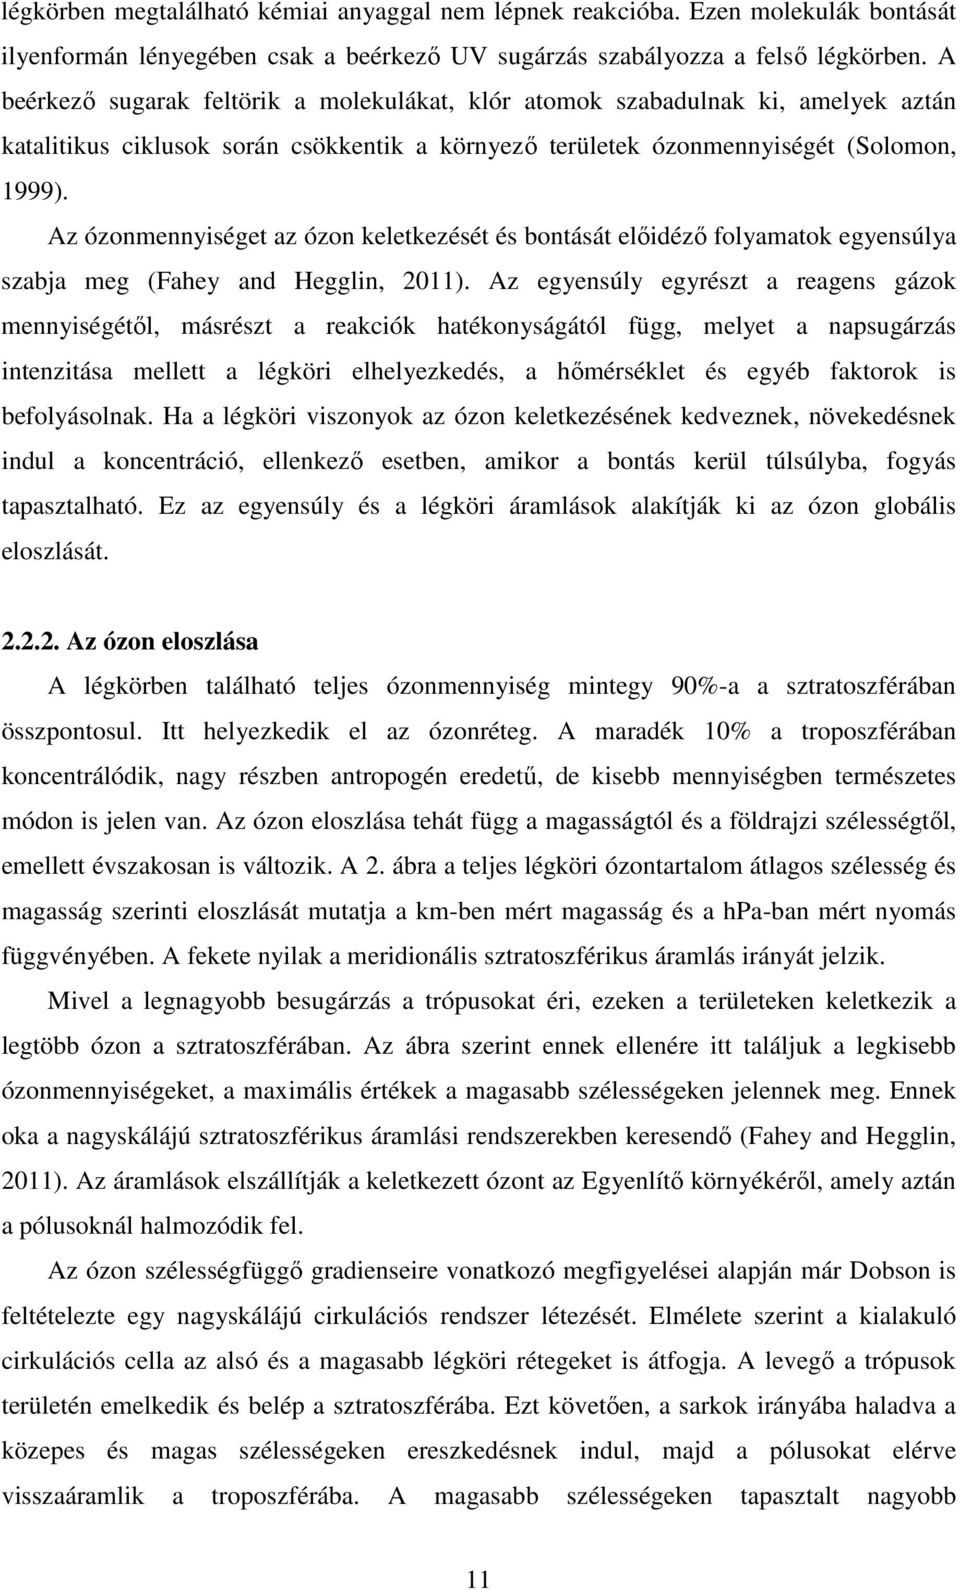 Az ózonmennyiséget az ózon keletkezését és bontását elıidézı folyamatok egyensúlya szabja meg (Fahey and Hegglin, 2011).